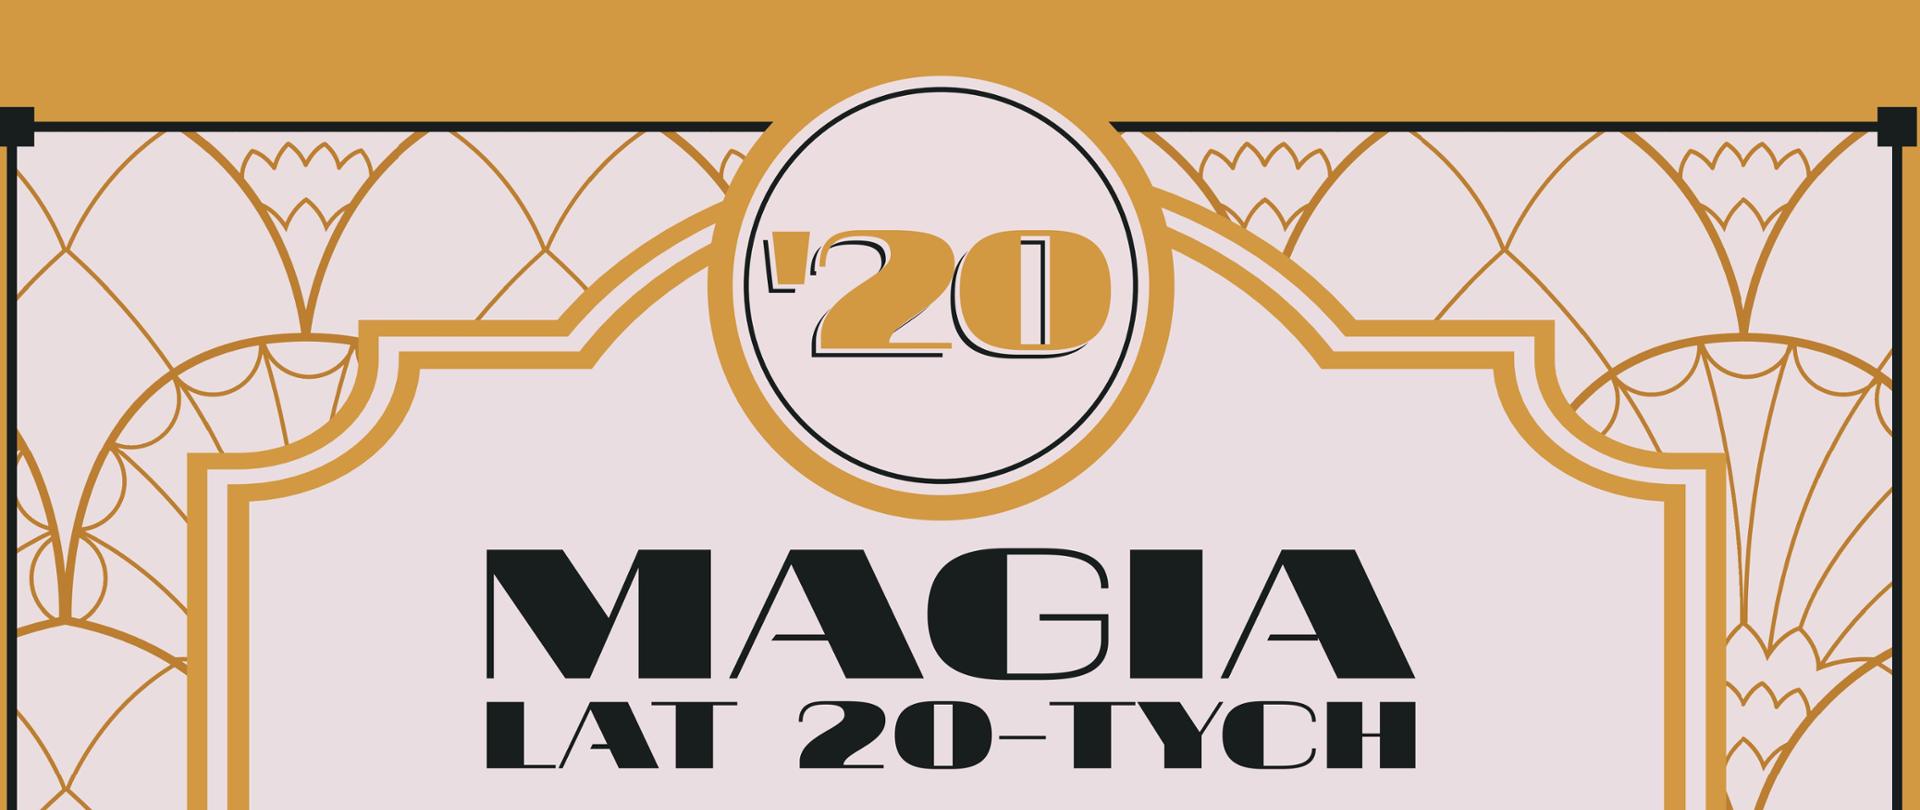 plakat informujący o wydarzeniu Magia lat 20-tych 24 września 2023 w Korczewie. Organizatorem wydarzenia jest LGD "Tygiel Doliny Bugu" tel. do organizatora 518 650 252 